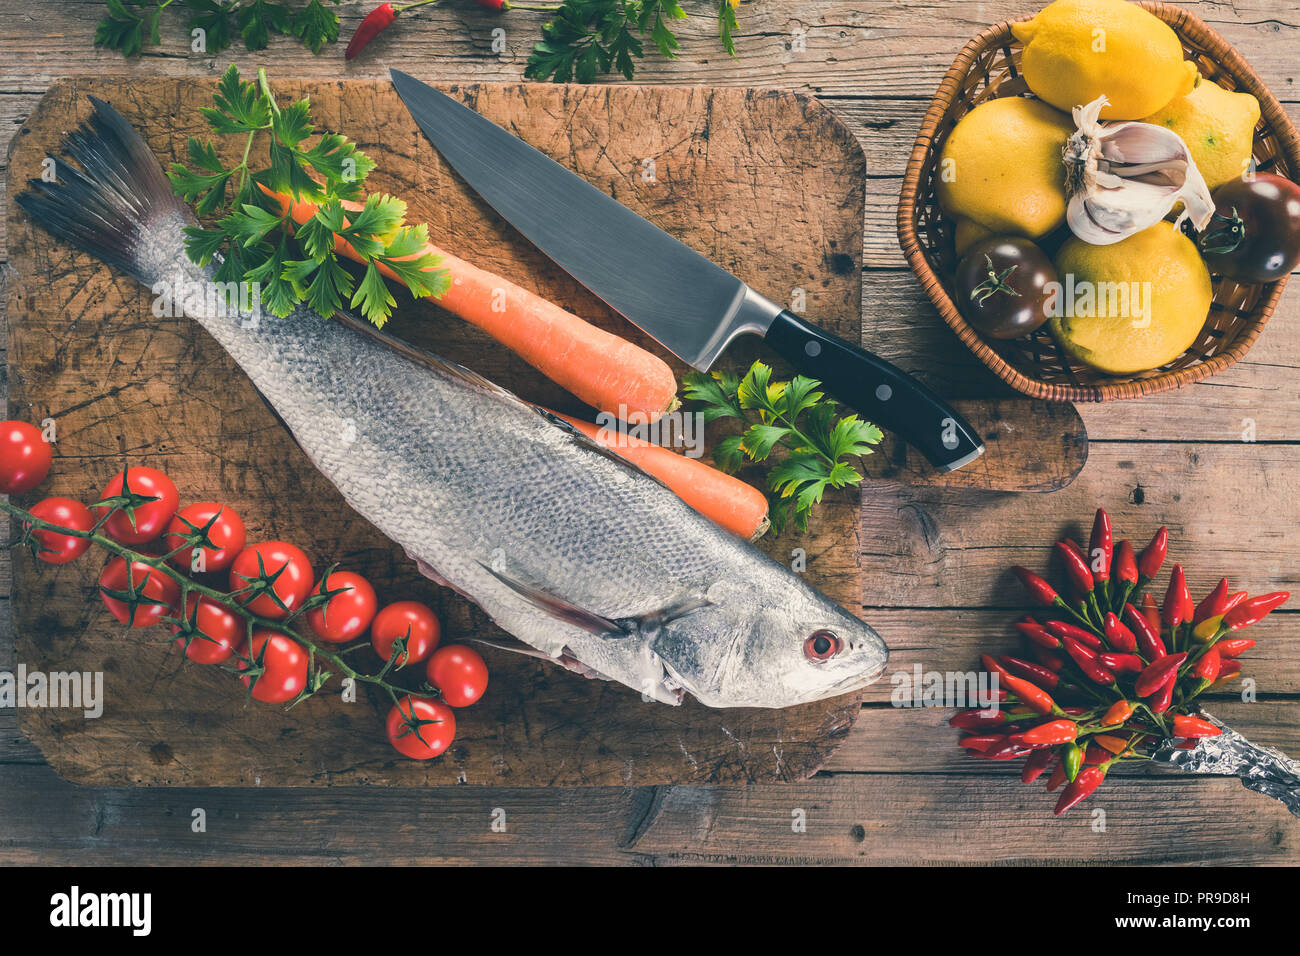 Shi drum pesce (Umbrina cirrosa) su una vecchia tavola di legno con carote, pomodori ciliegini, pomodori nero, limone, aglio, prezzemolo e peperoncino piccante, vista dall'alto s Foto Stock